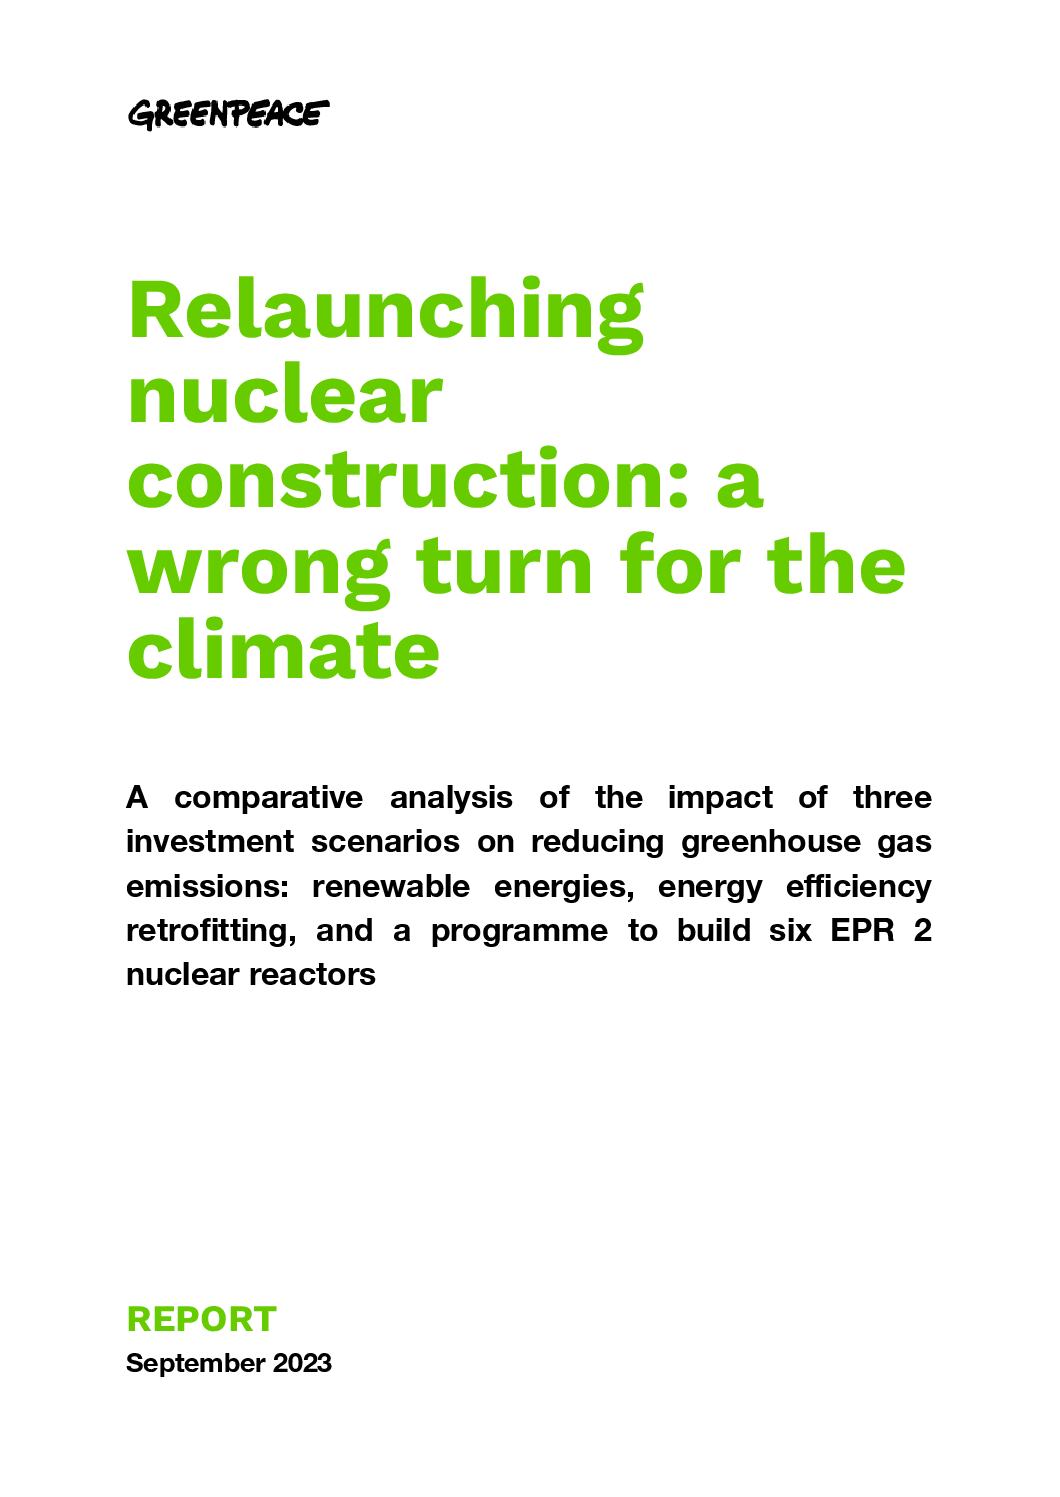 Diversion climatique : le mauvais choix de la relance du nucléaire